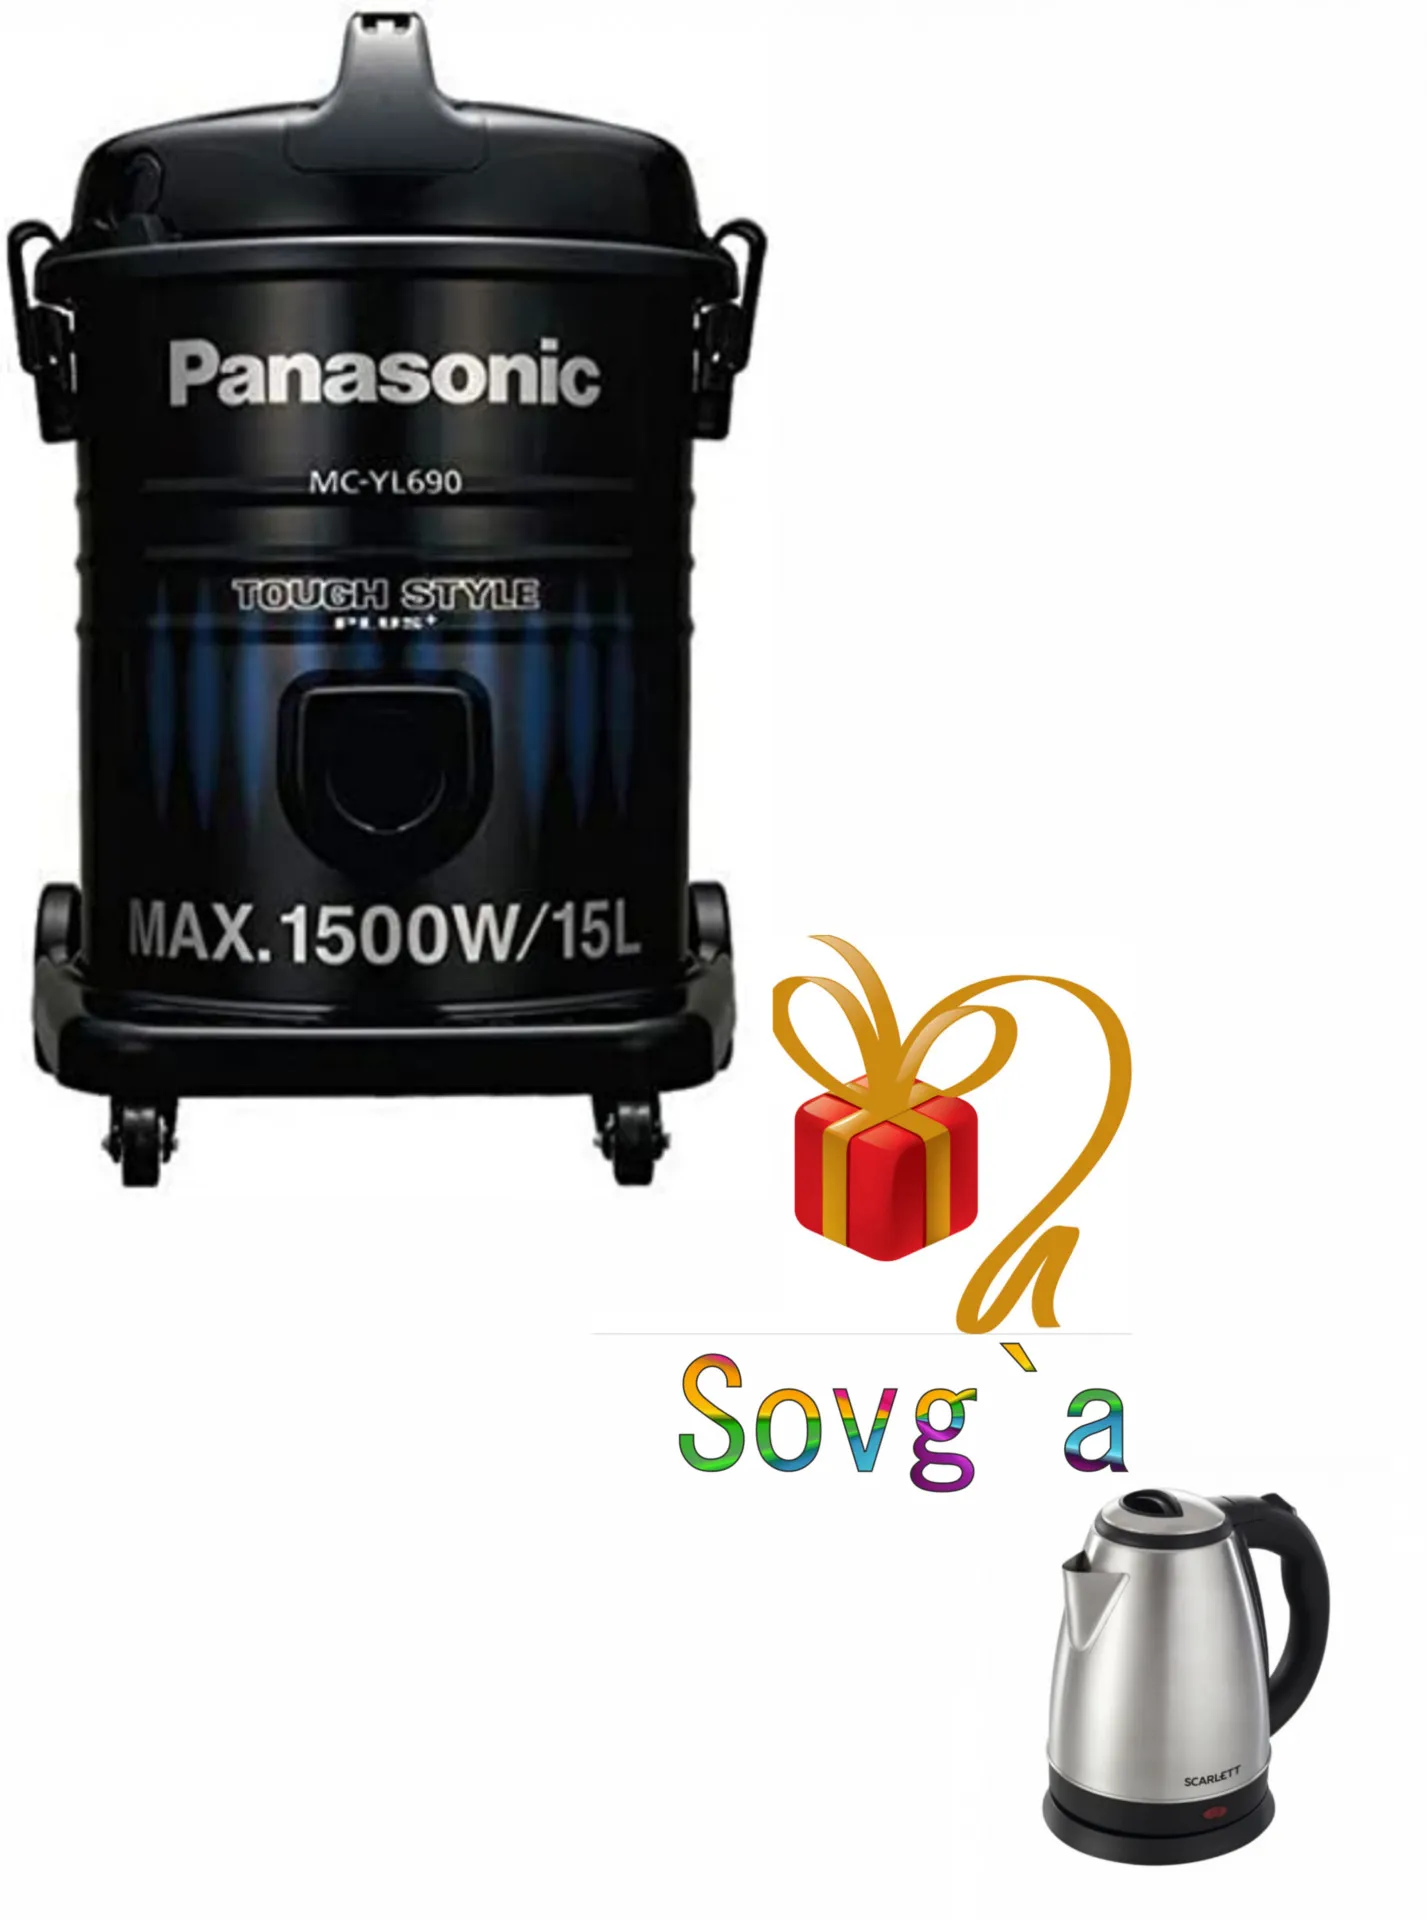 Барабанный пылесос Panasonic MC-YL690 + в подарок водонагреватель#1